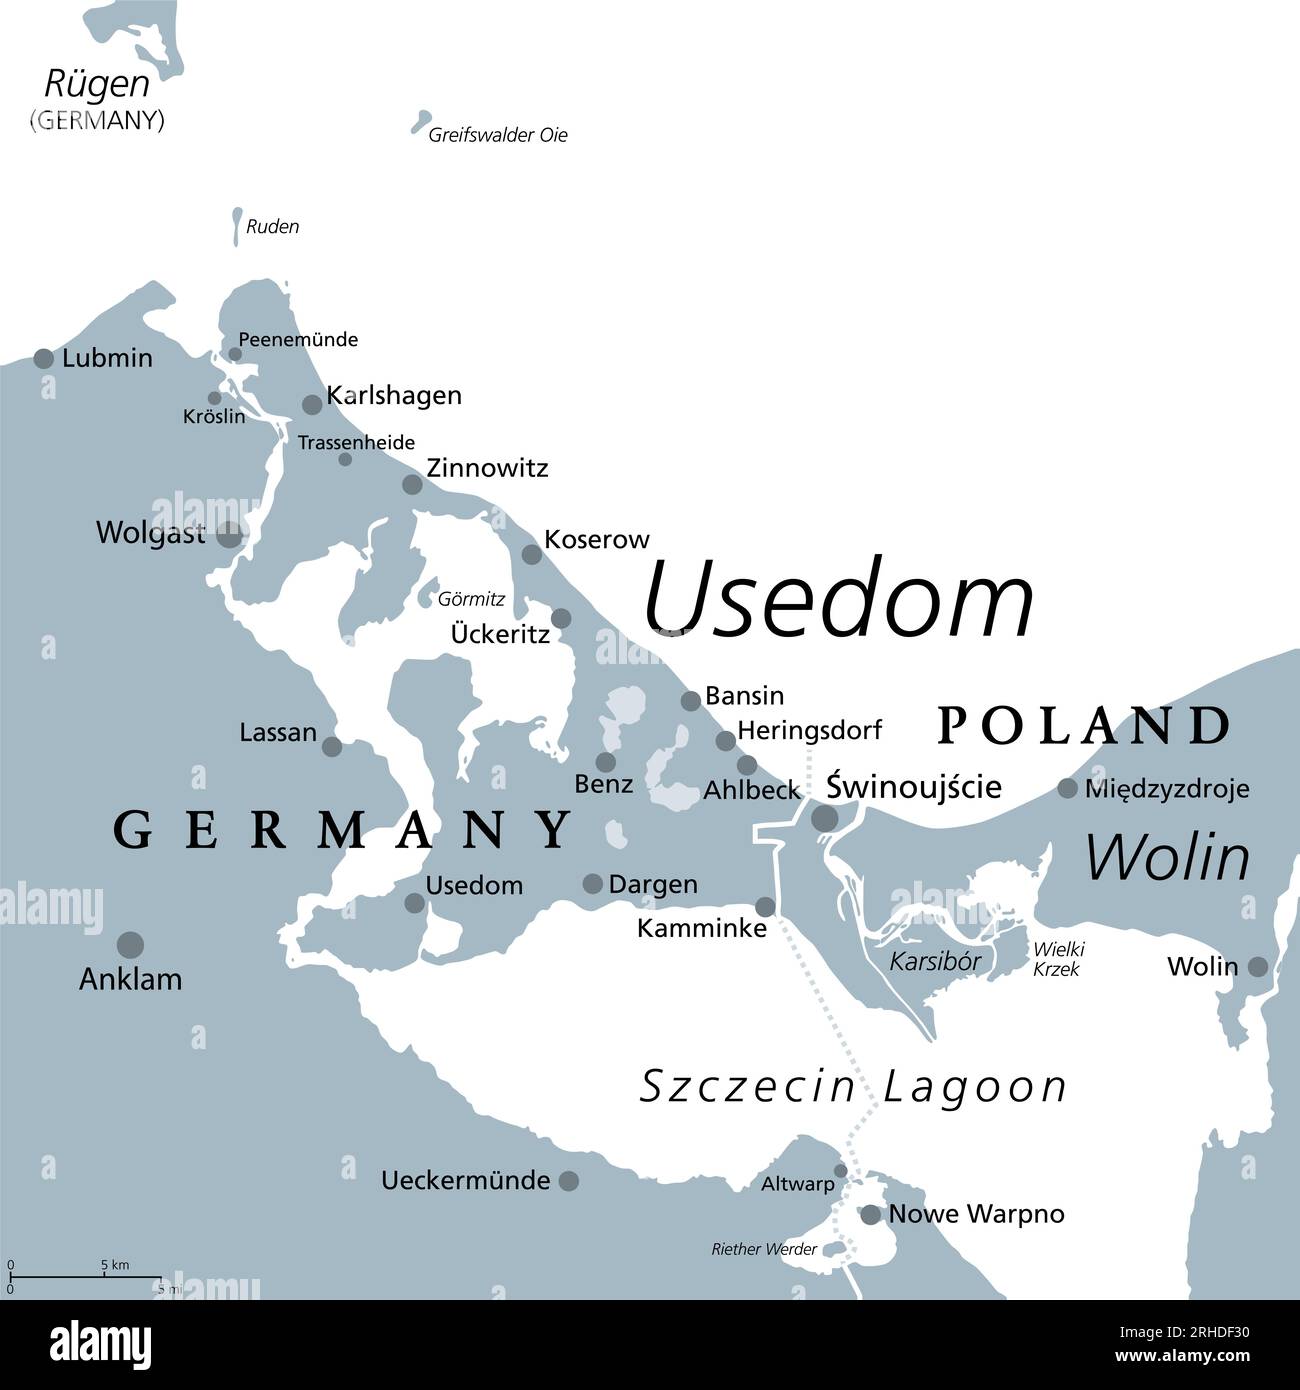 Usedom, isola del Mar Baltico in Pomerania, mappa politica grigia. Soprannominata Sun Island, l'isola più soleggiata e popolosa del Mar Baltico. Foto Stock